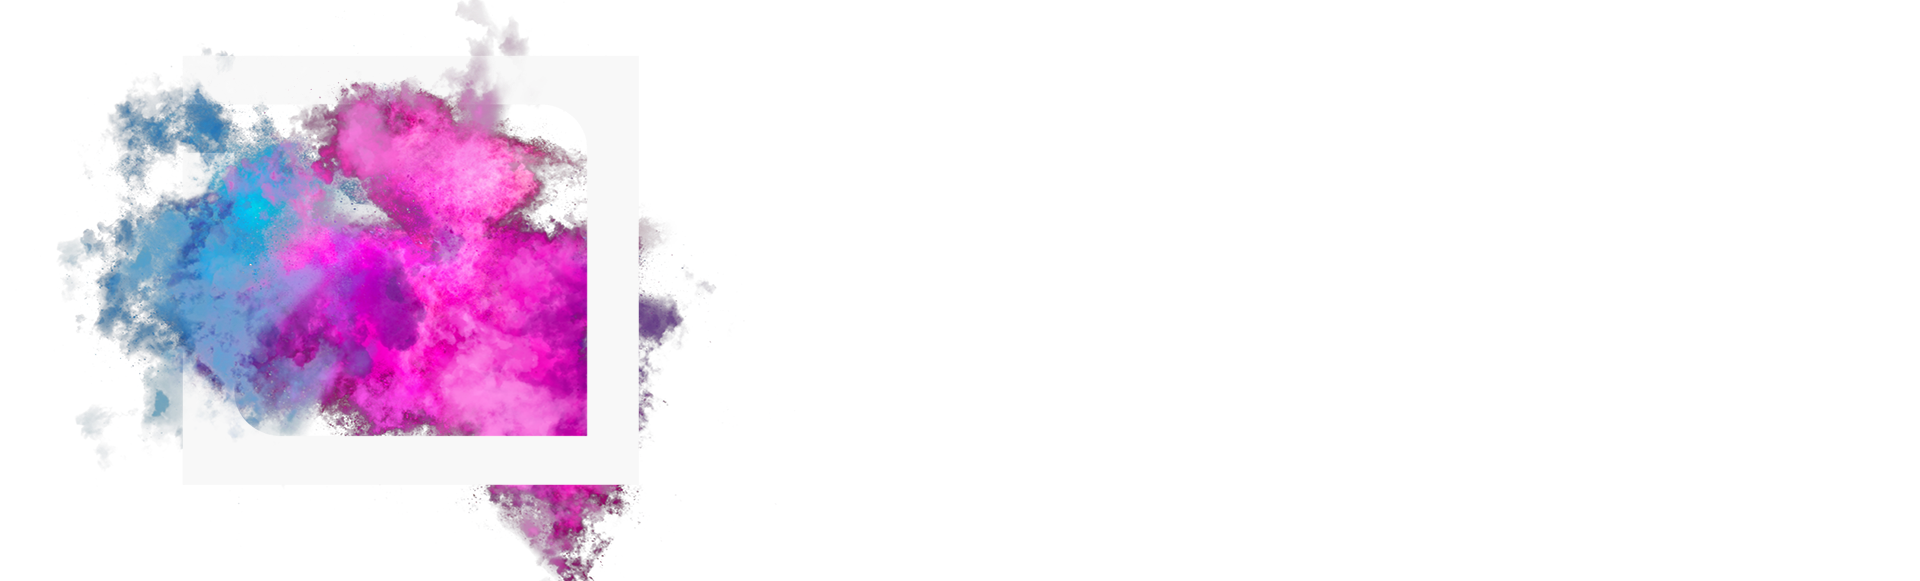 Design & Branding